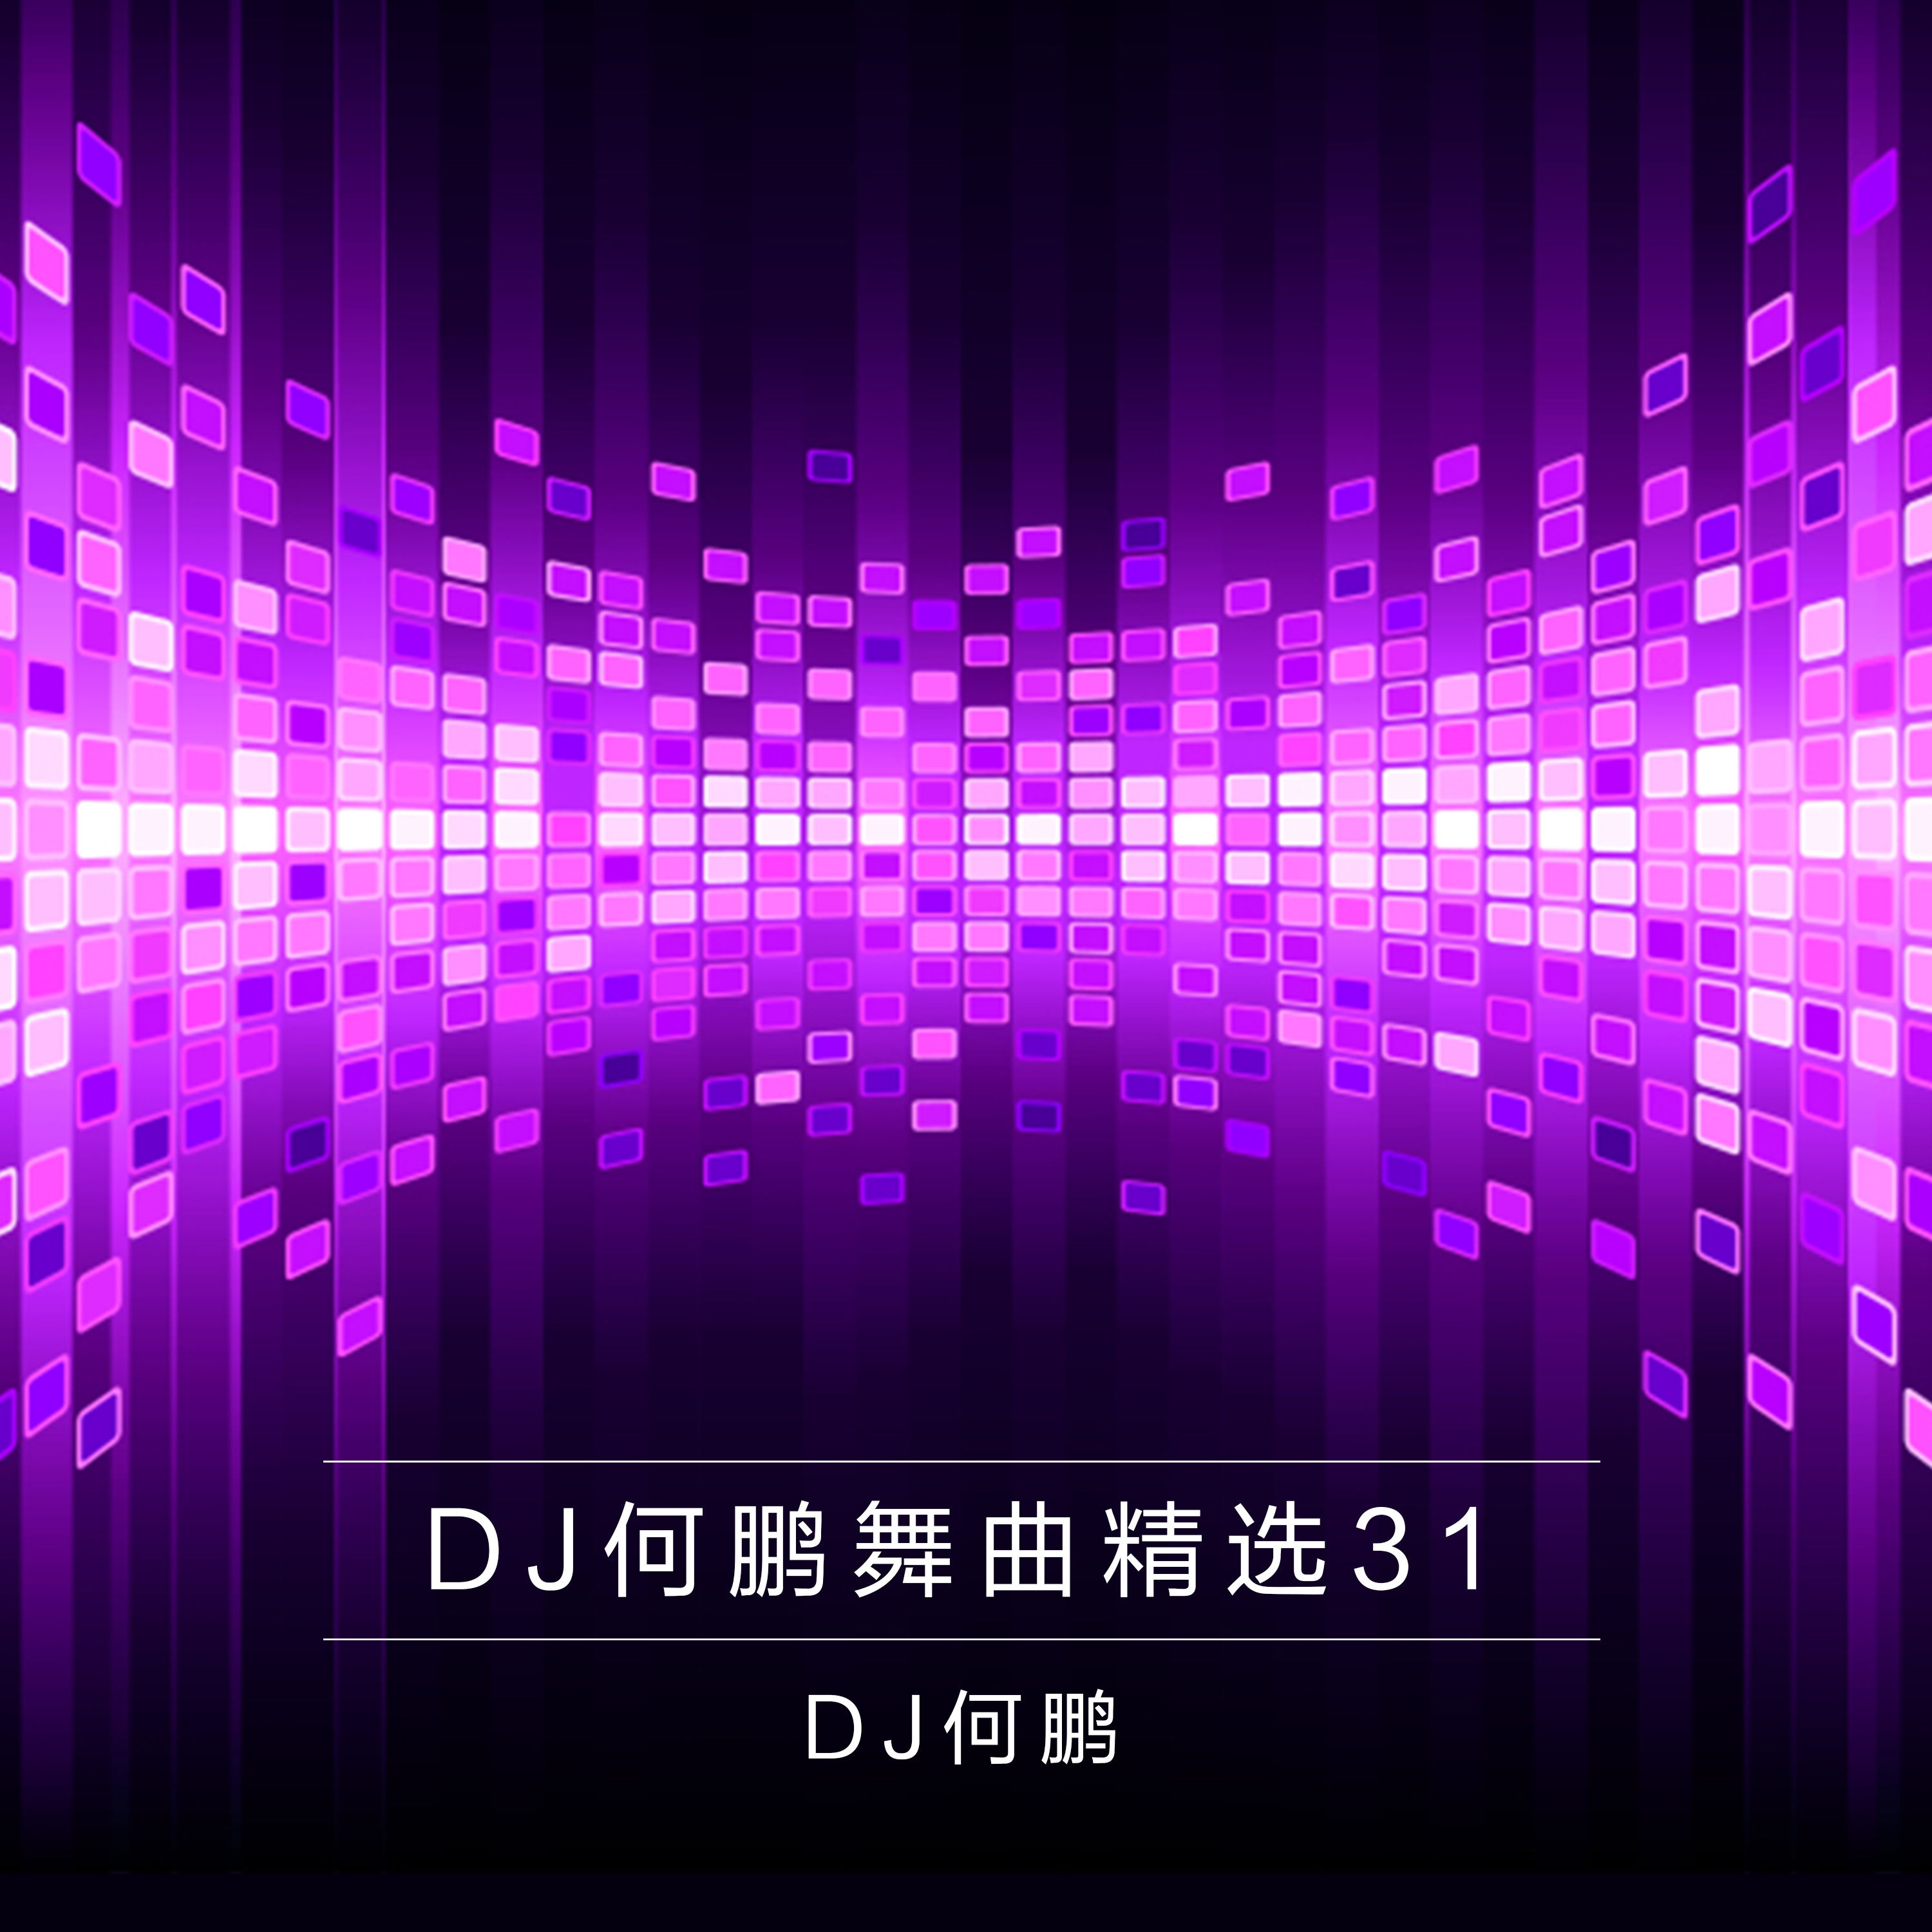 zheng dian xiao qian DJ Version